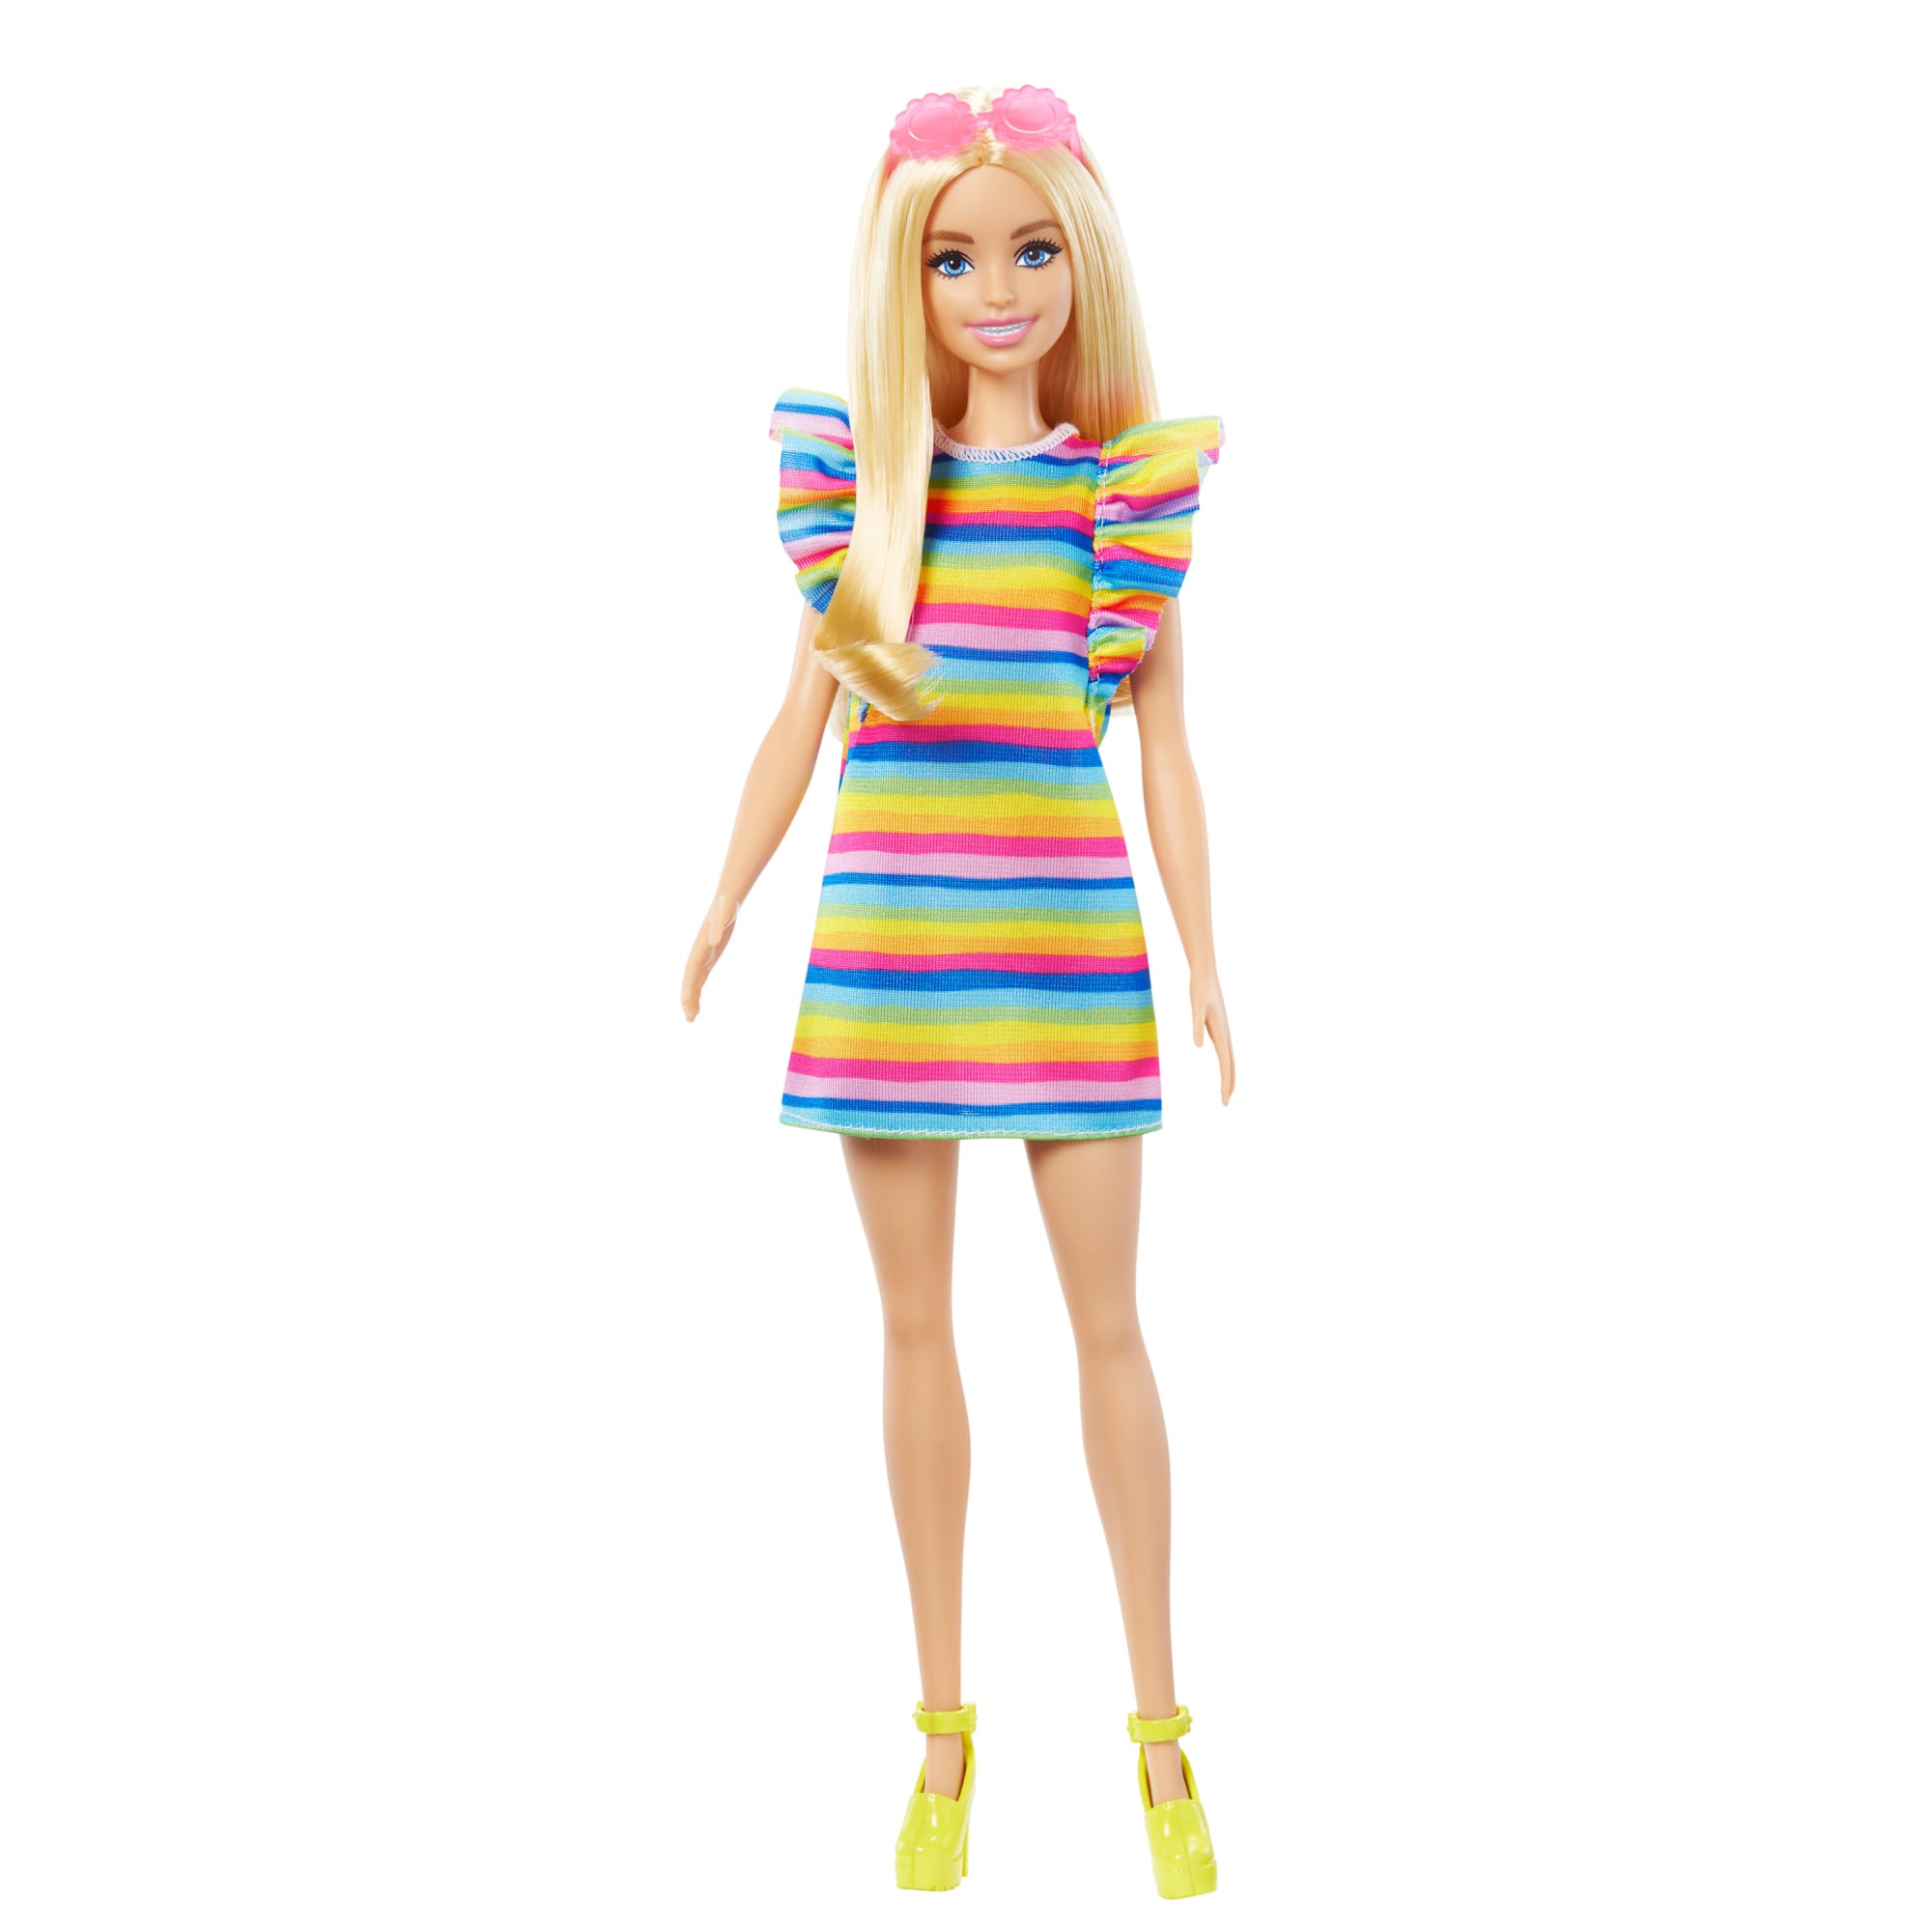 Barbie Fashionistas Doll, Braces & Rainbow Dress